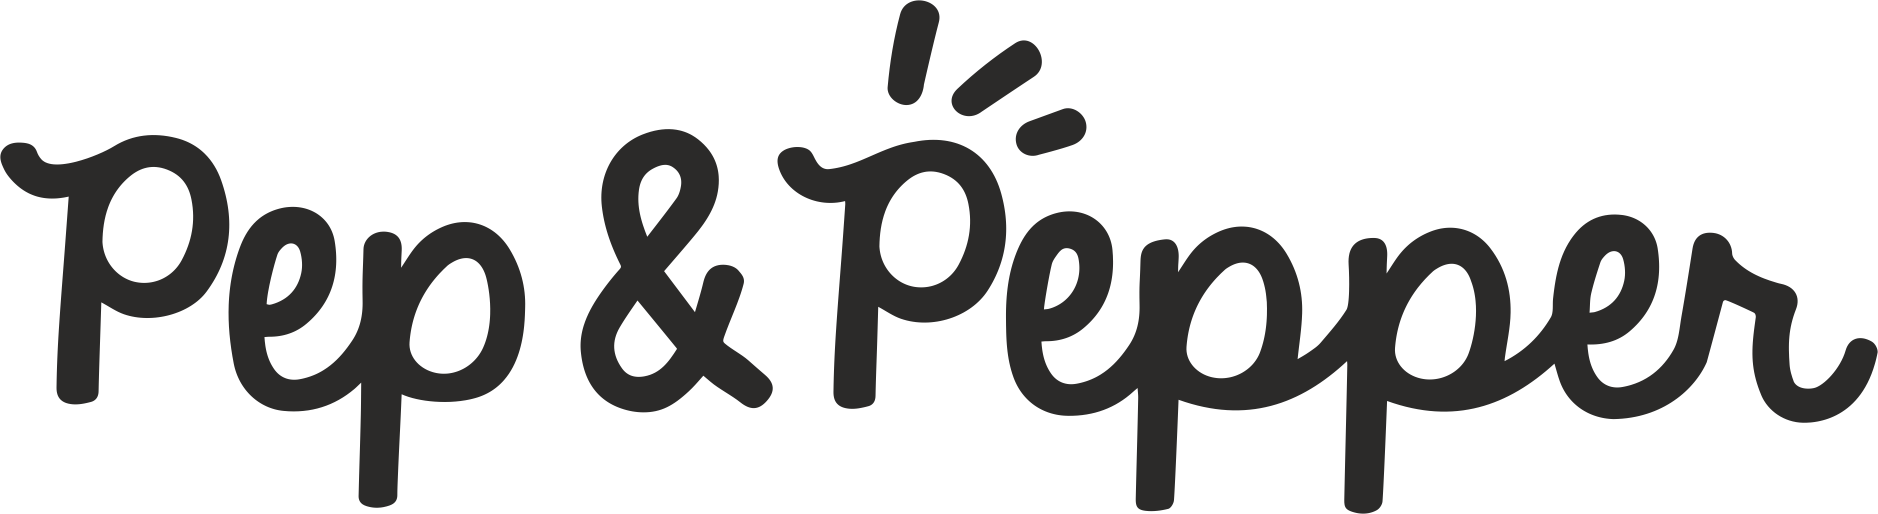 Pep&Pepper